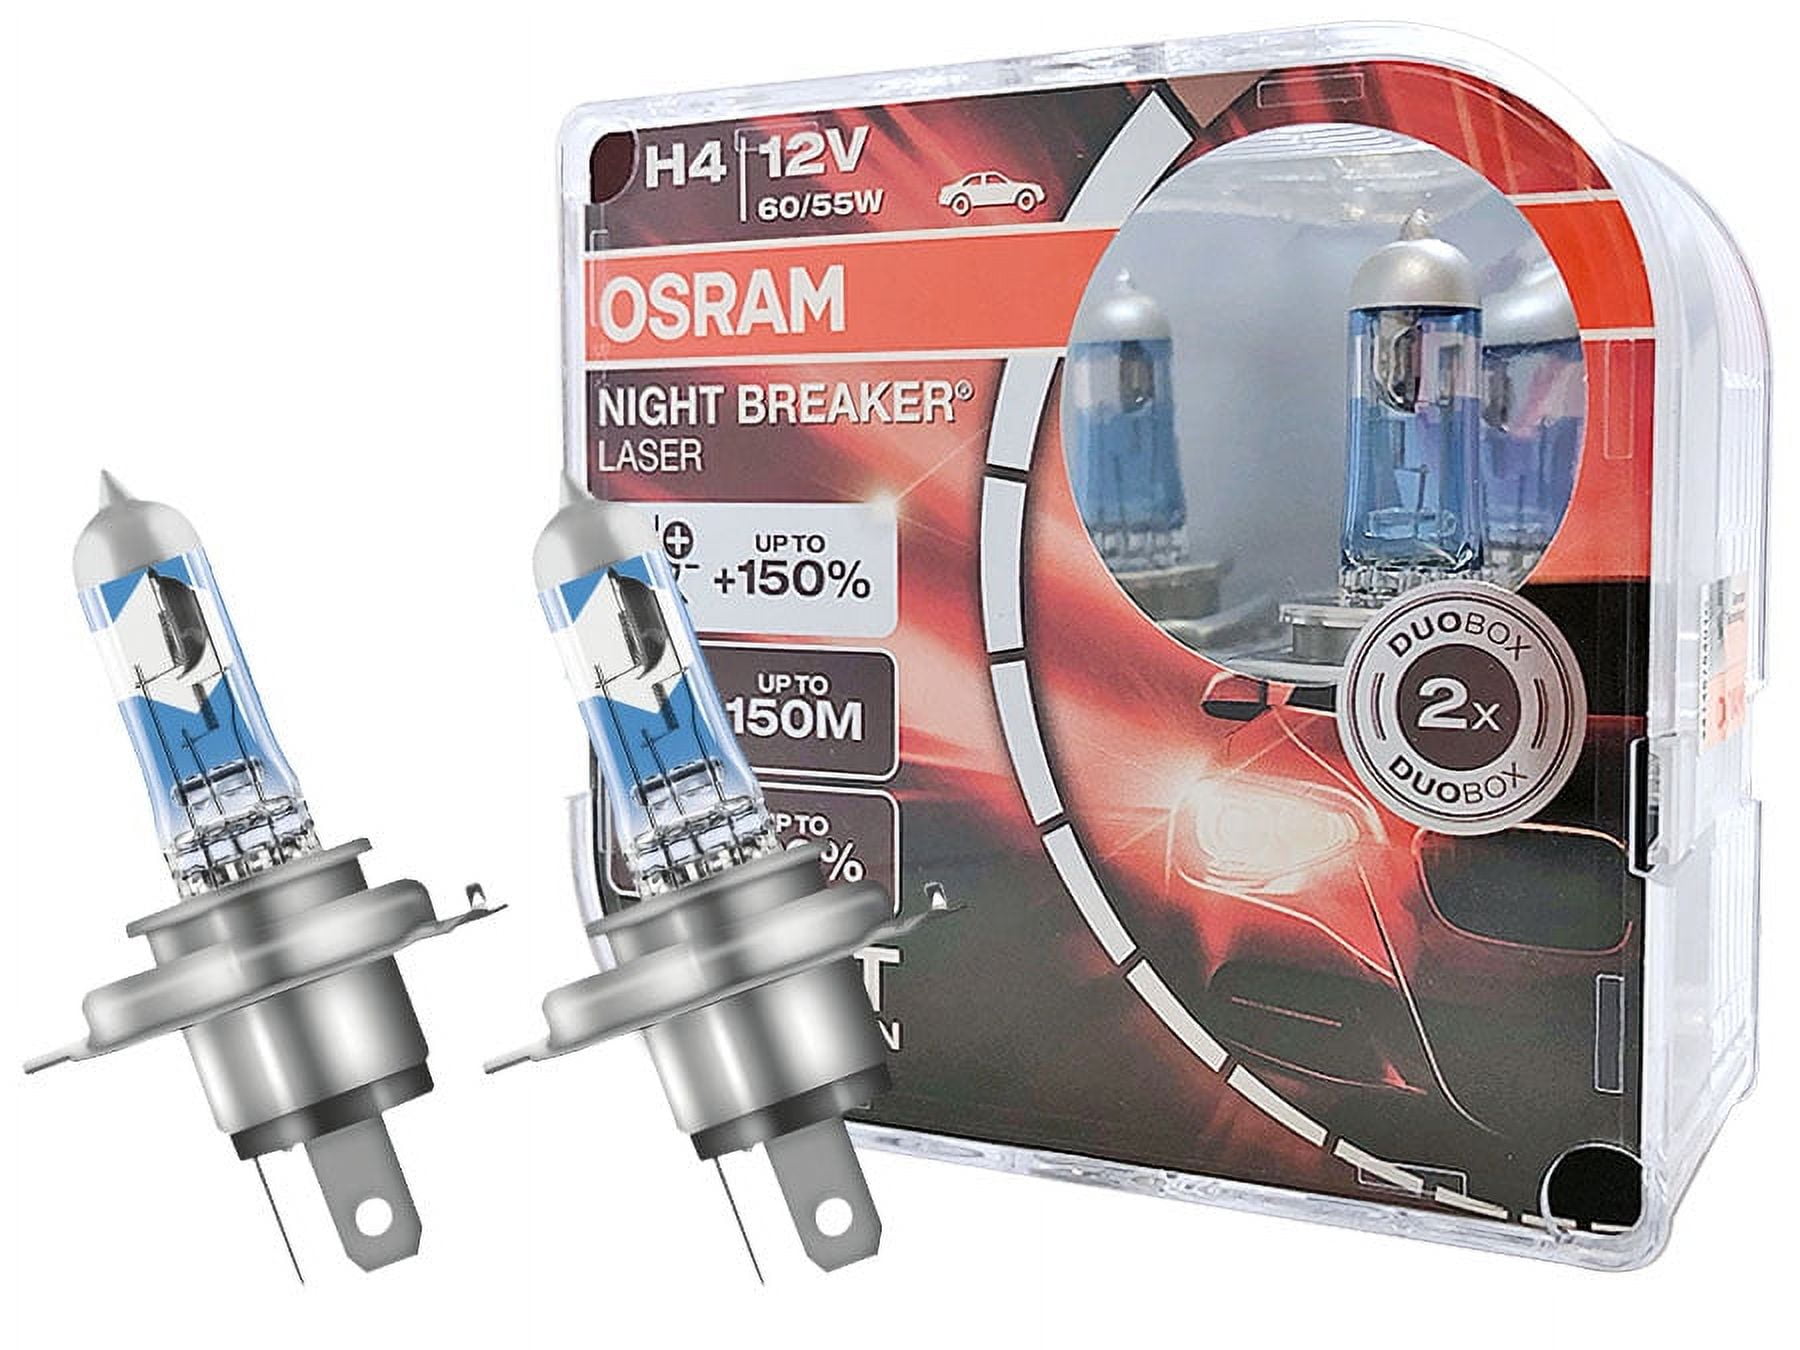 OSRAM H4 12V 60/55W 64193NBL Night Breaker Laser Car Lamps Halogen  Headlight Hi/lo Beam 2X